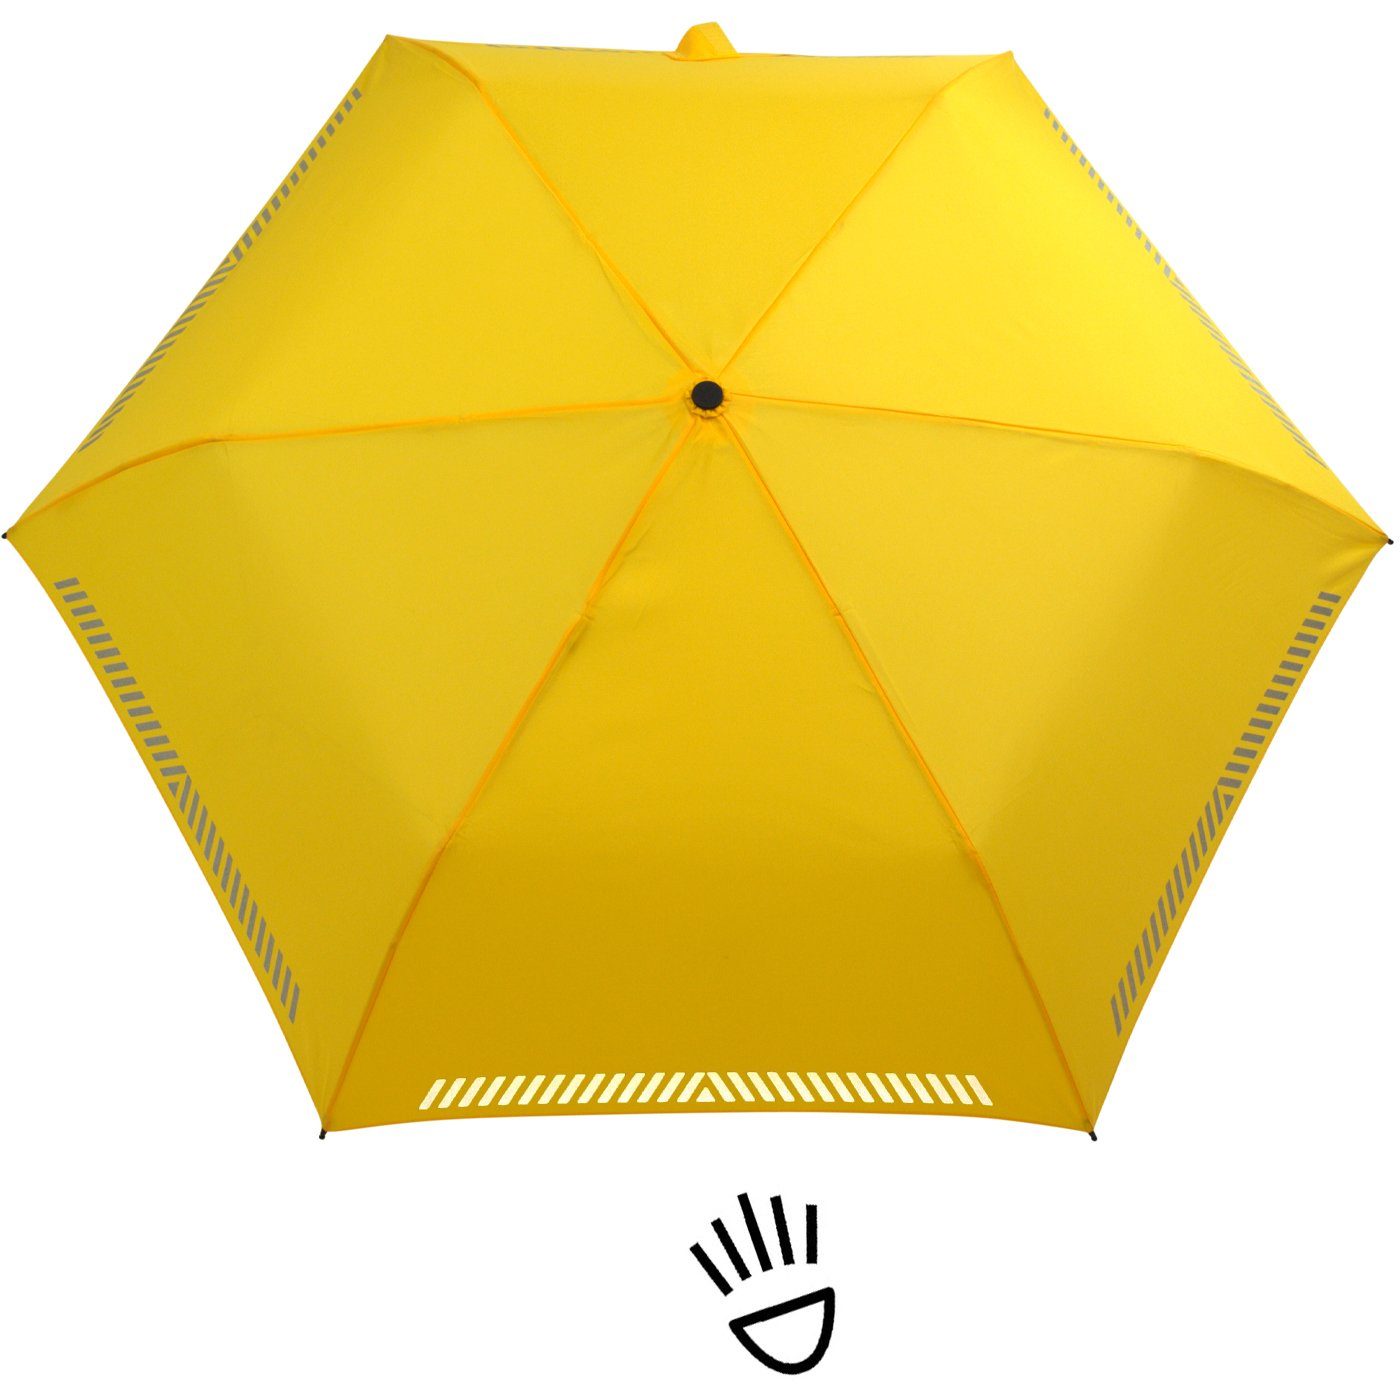 durch Auf-Zu-Automatik, reflektierend, gelb mit Taschenregenschirm Kinderschirm - Reflex-Streifen iX-brella Sicherheit